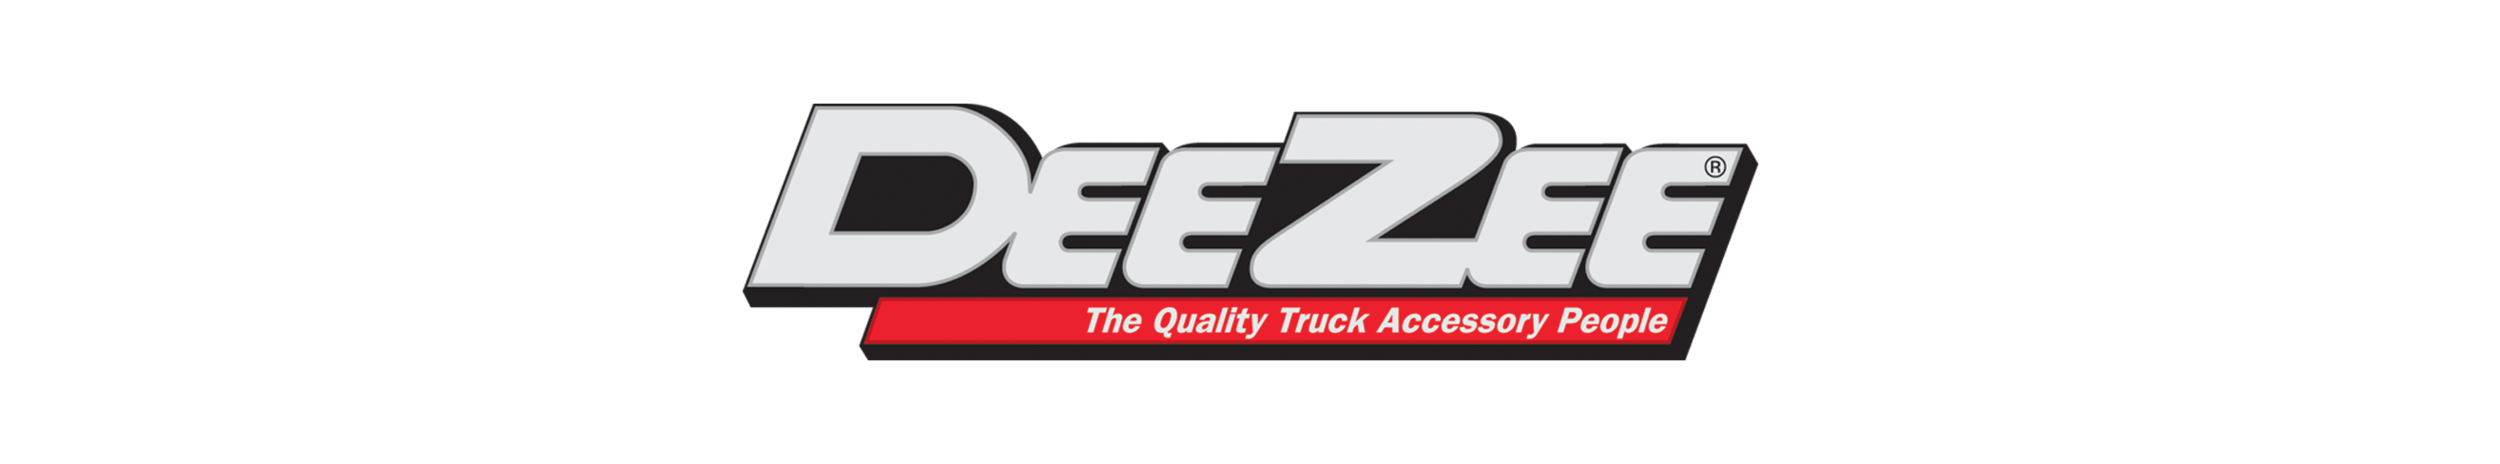 deezee-logo.png